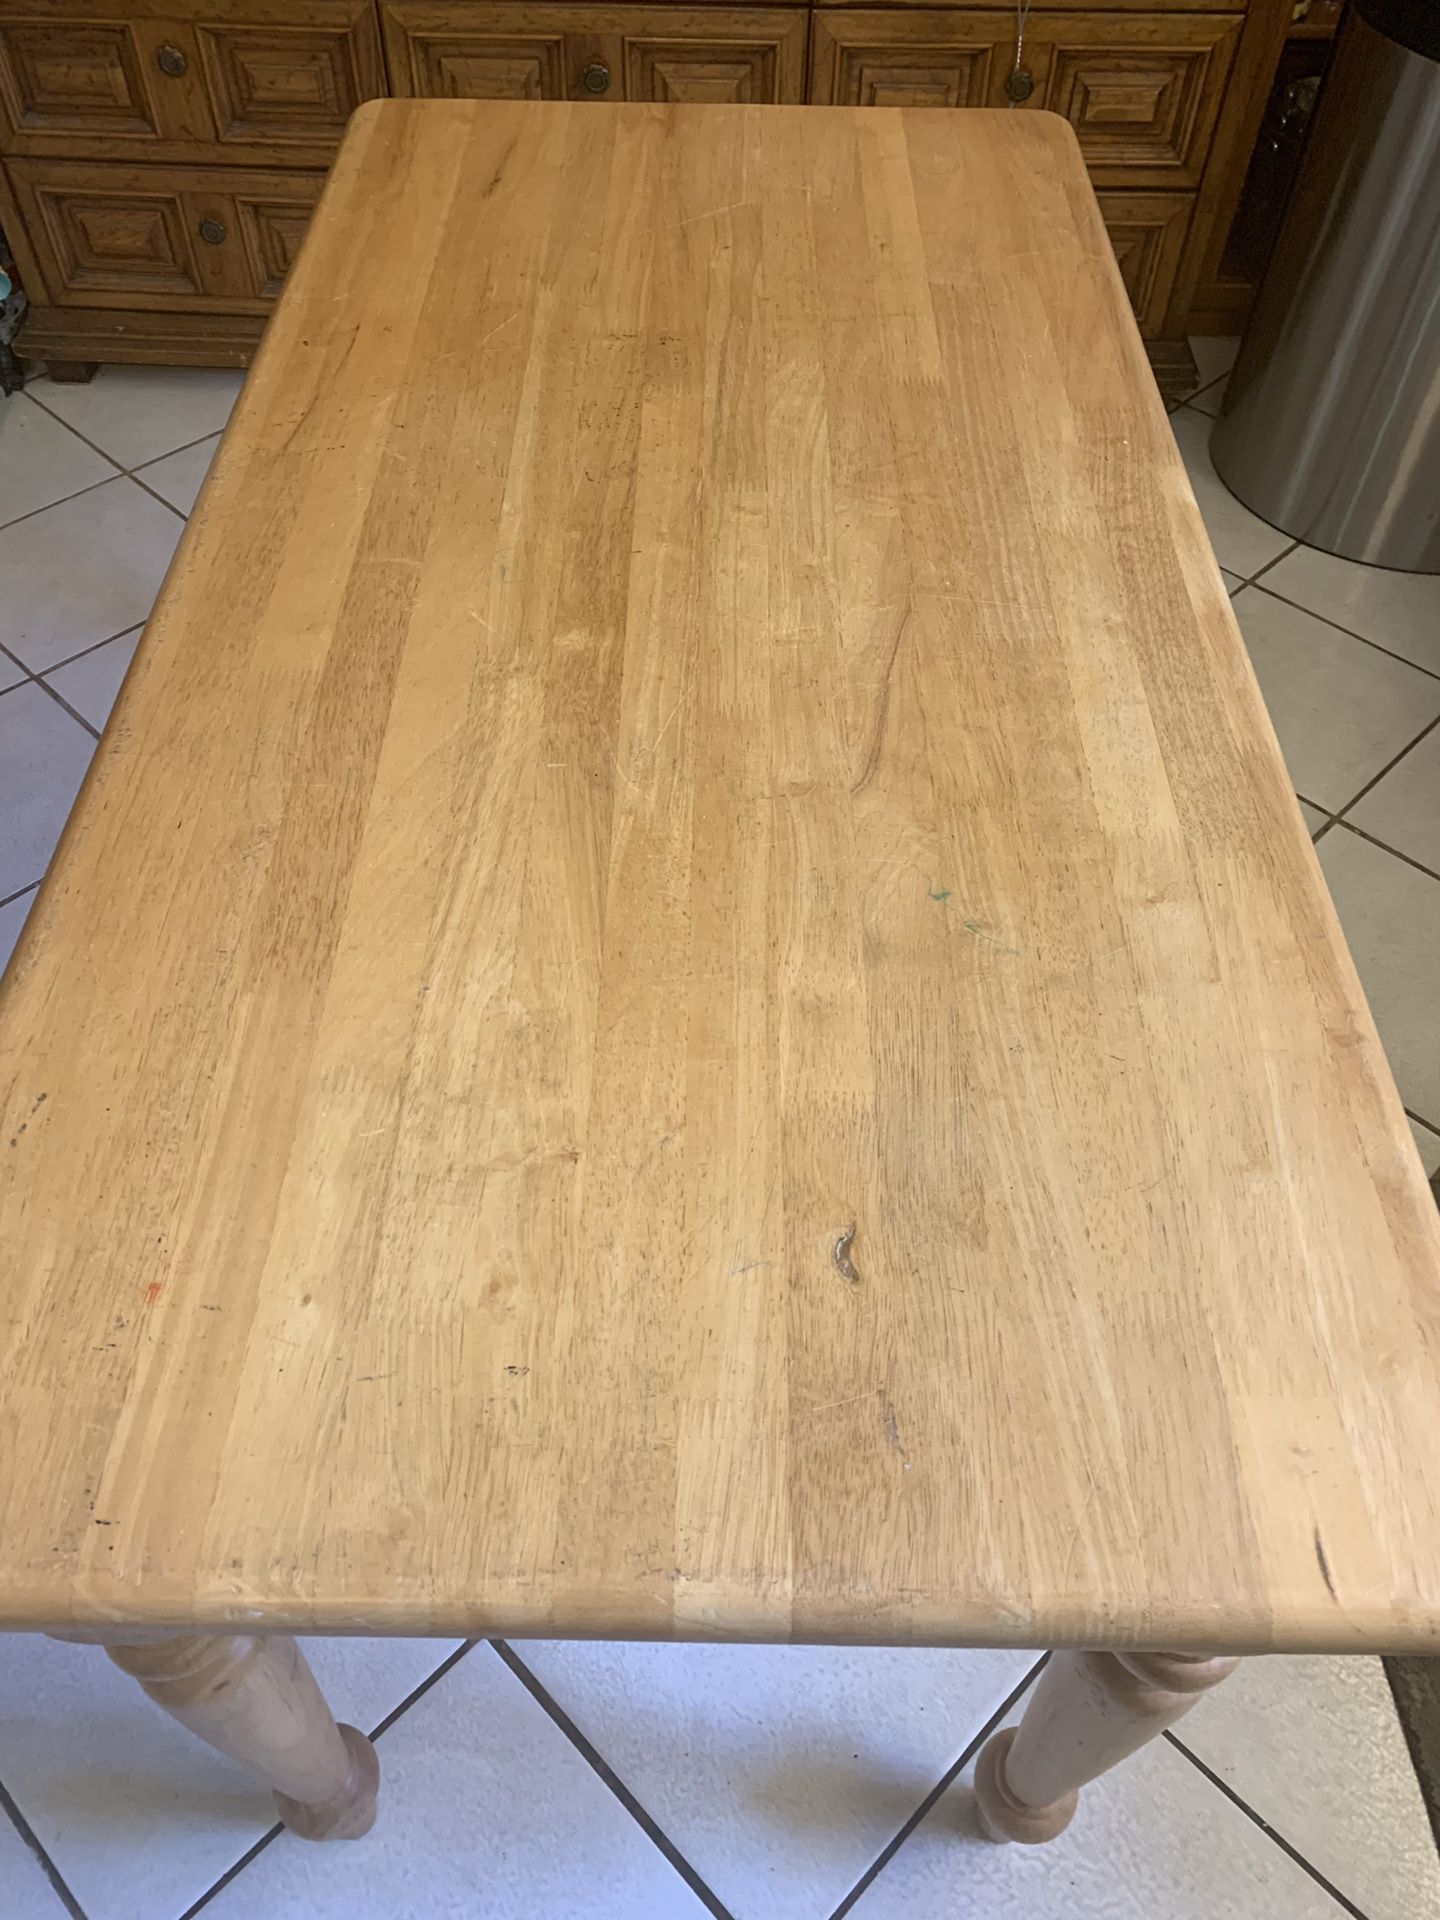 Super Solid Wooden kitchen table with drawers- Mesa de cocina de madera con cajones